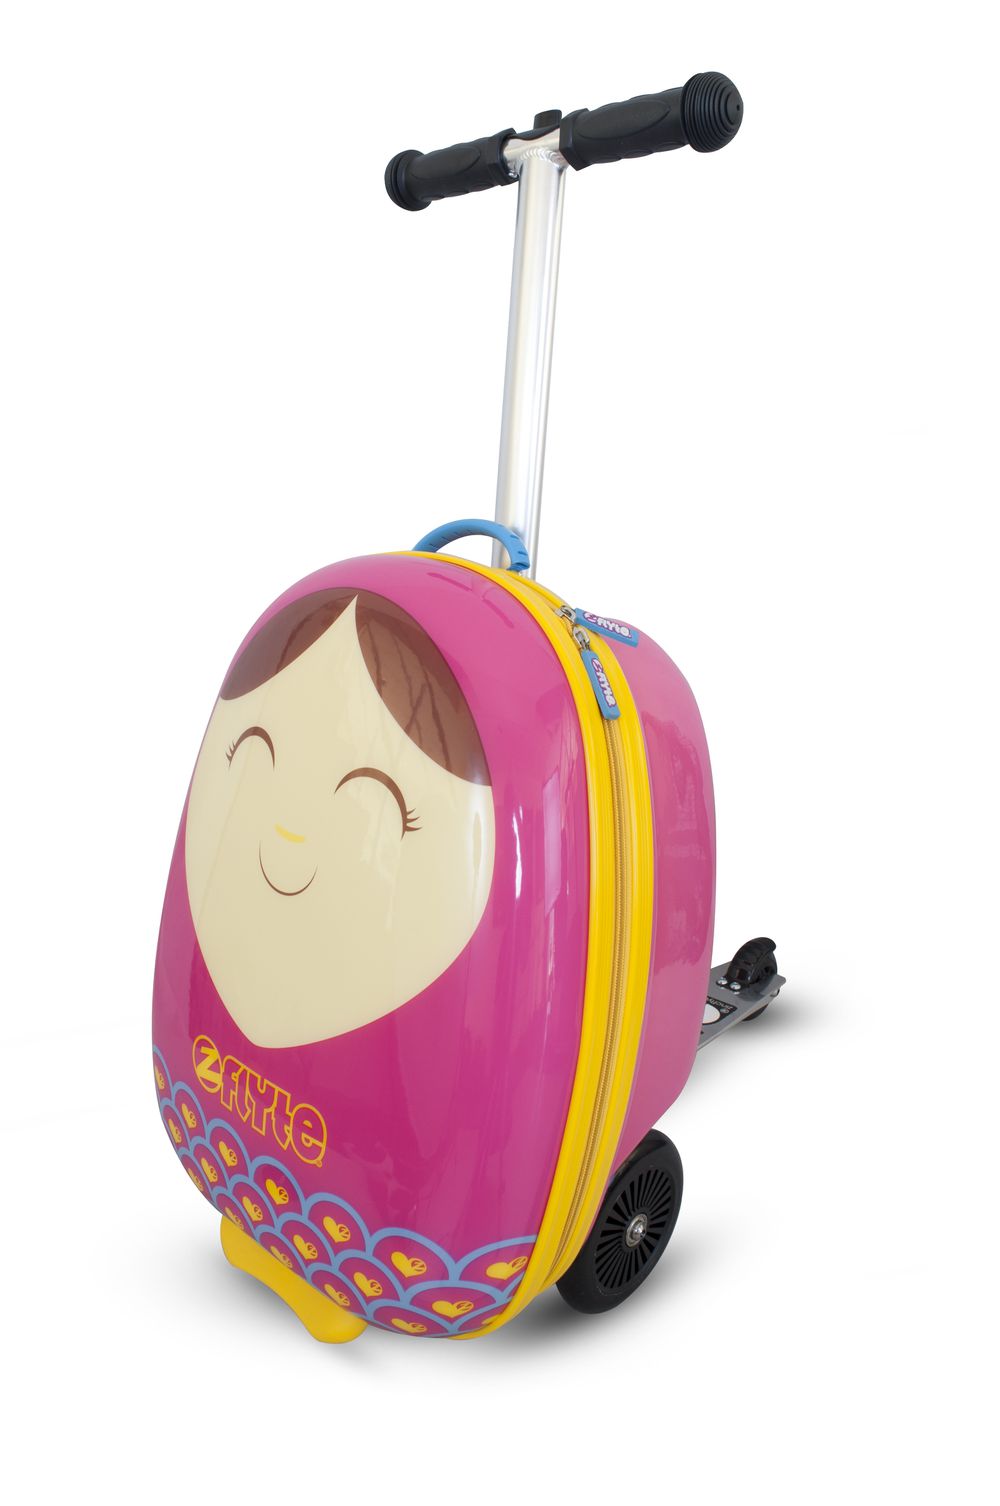 英國Flyte - 多功能滑板車-貝蒂娃娃 (18吋)-3.6KGS(可變型行李箱)